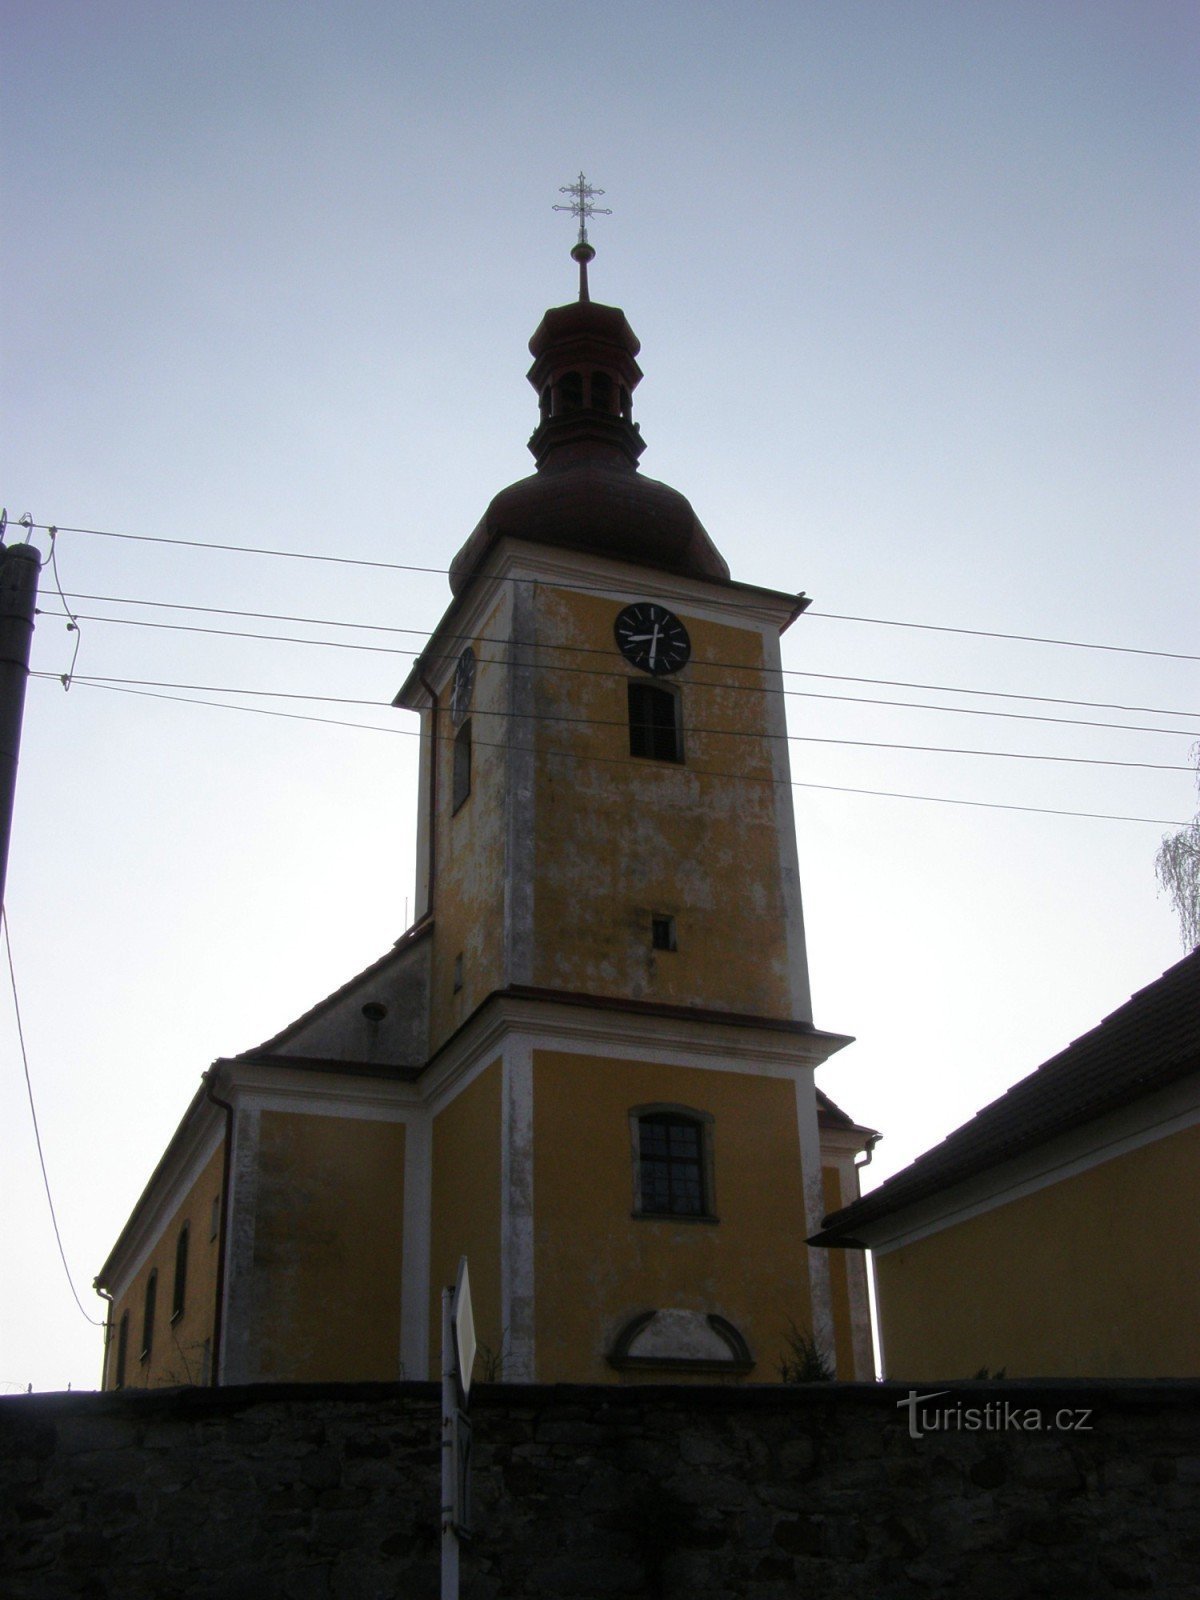 Rybná nad Zdobnicí - nhà thờ St. Jakub